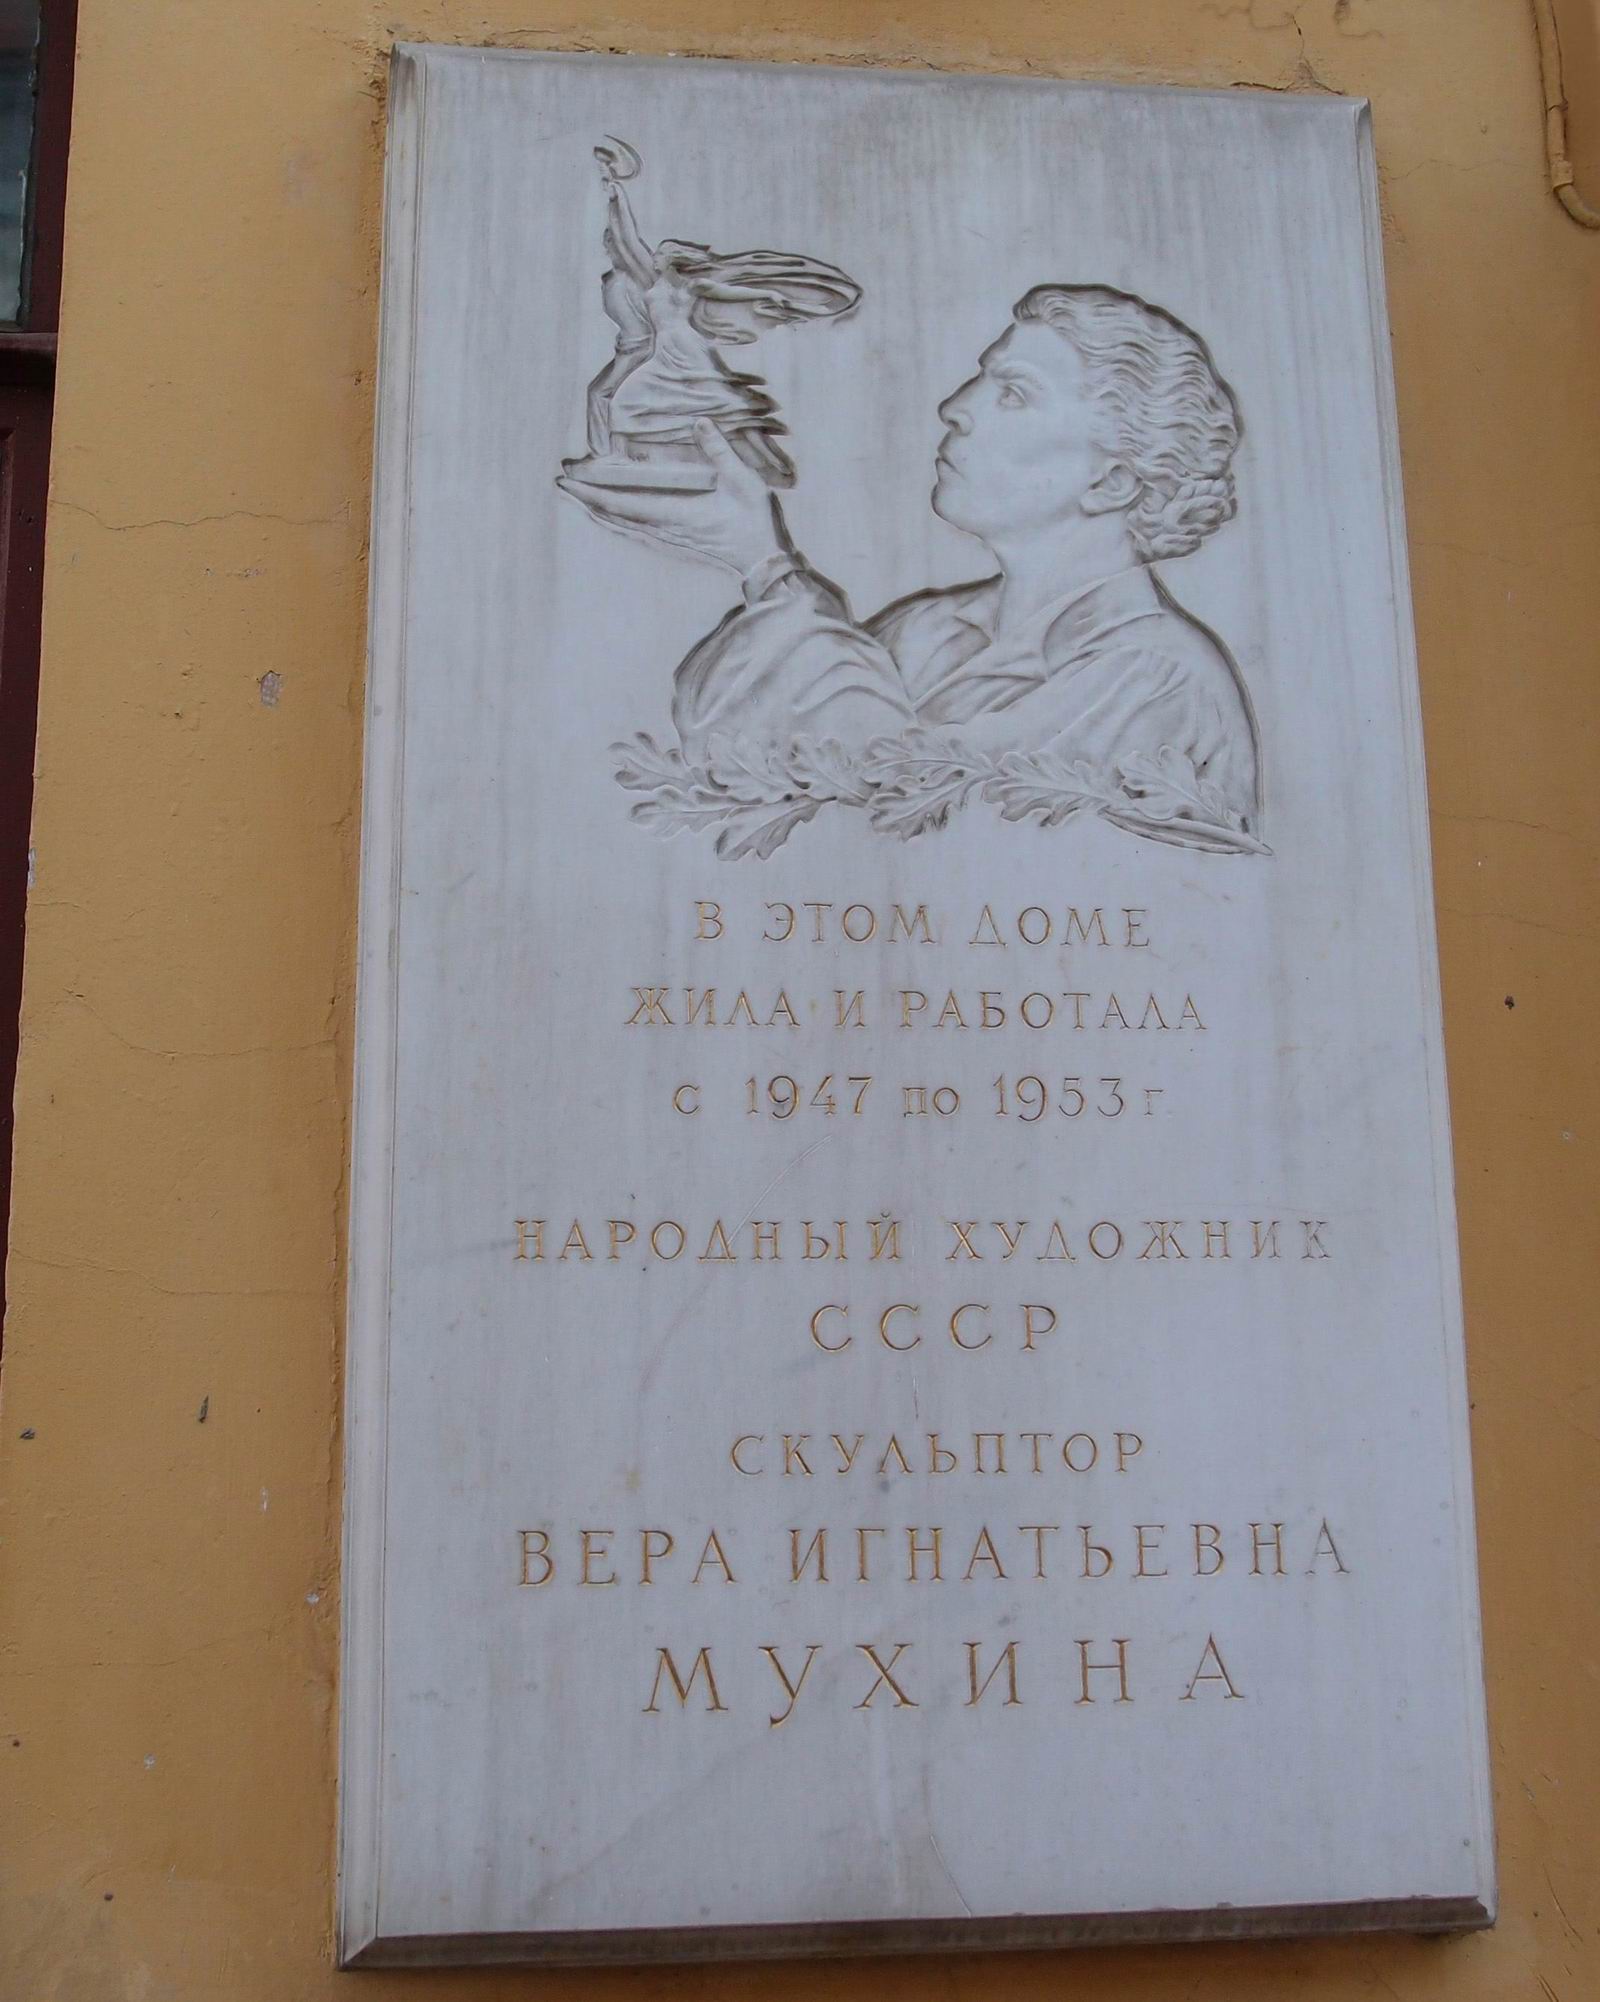 Мемориальная доска Мухиной В.И. (1889–1953), ск. З.Г.Иванова, арх. Н.Г.Зелинская, в Пречистенском переулке, дом 5а, открыта в ноябре 1956.